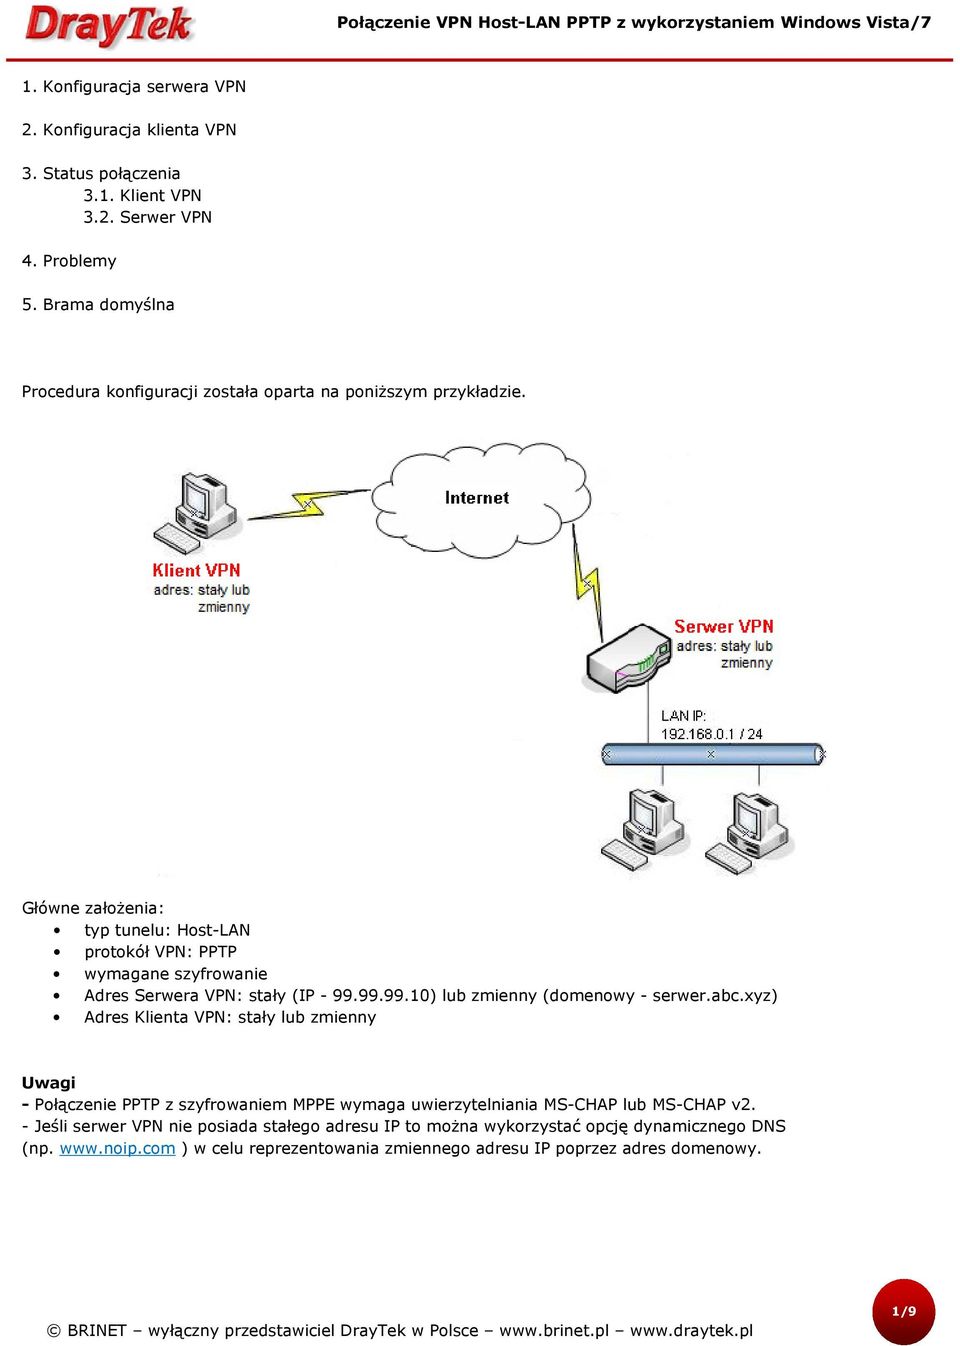 Główne założenia: typ tunelu: Host-LAN protokół VPN: PPTP wymagane szyfrowanie Adres Serwera VPN: stały (IP - 99.99.99.10) lub zmienny (domenowy - serwer.abc.